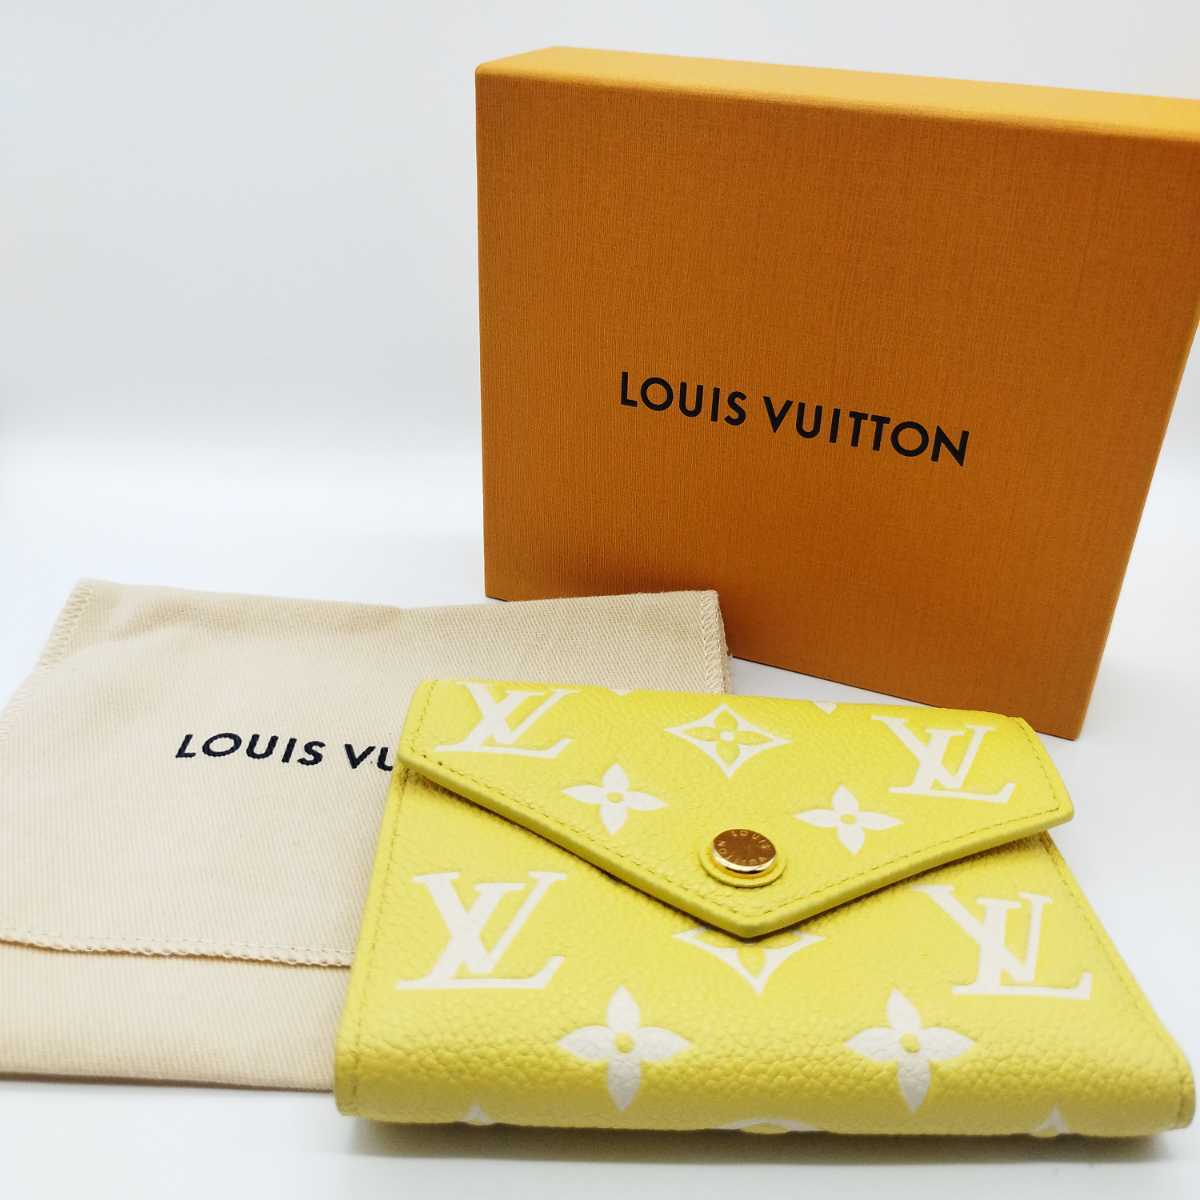 ルイヴィトン LOUIS VUITTON 財布 三つ折り ポルトフォイユ ヴィクトリーヌ モノグラム アンプラント イエロー ホワイト 黄色 白  M81428